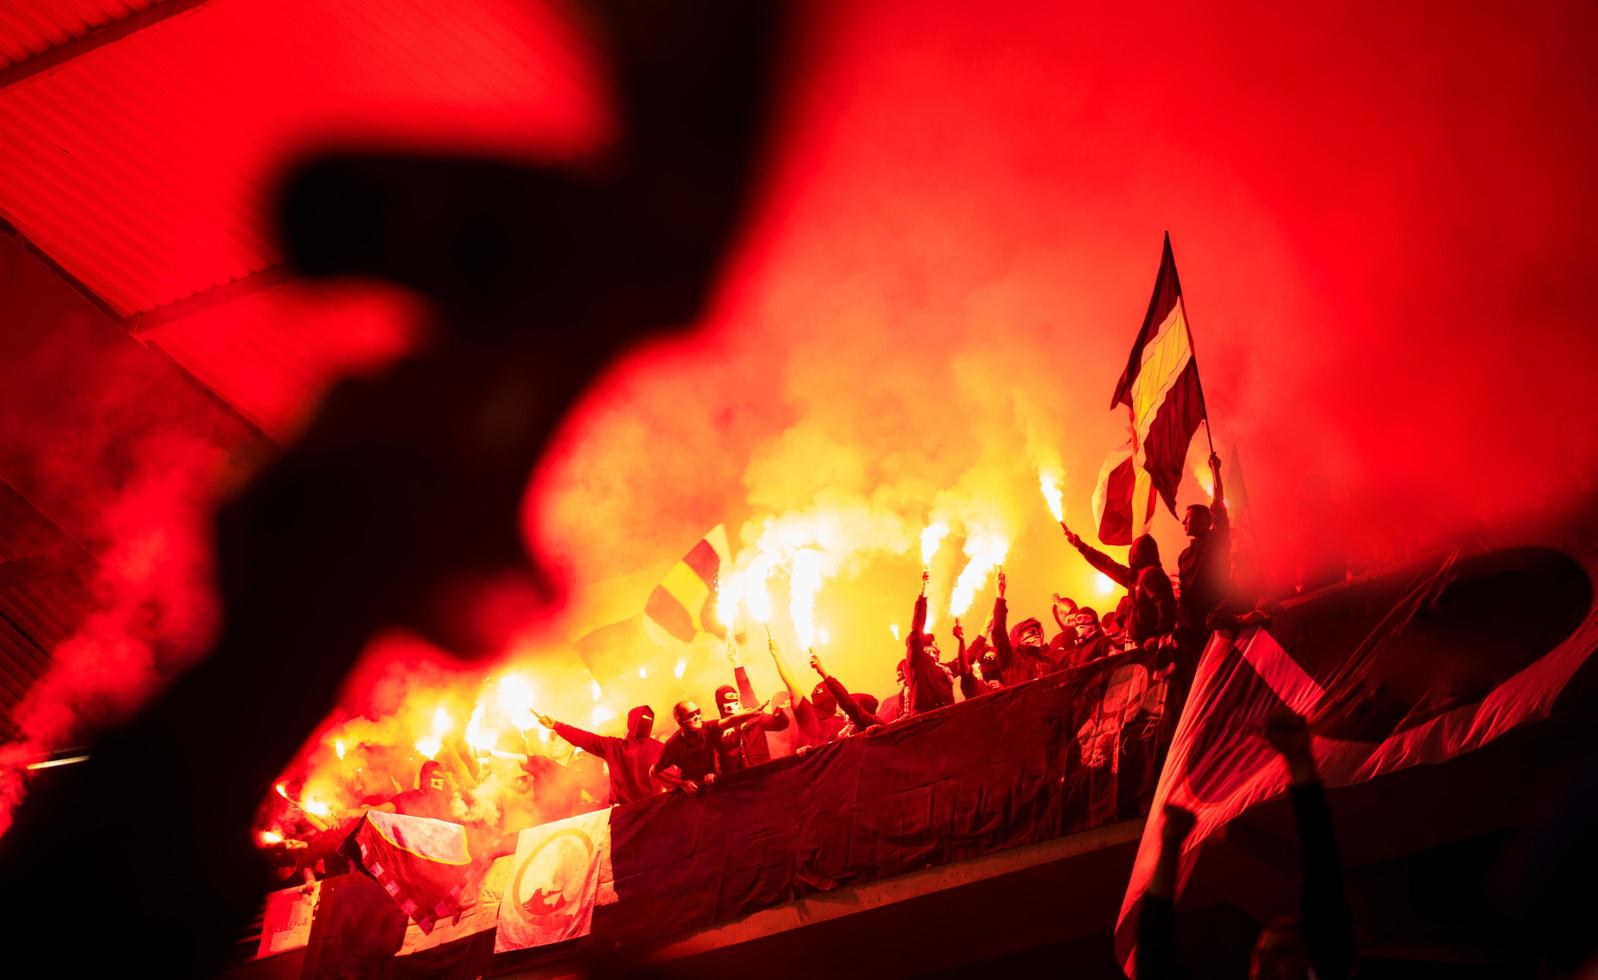 vándalos de fútbol con máscara sosteniendo antorchas en llamas foto